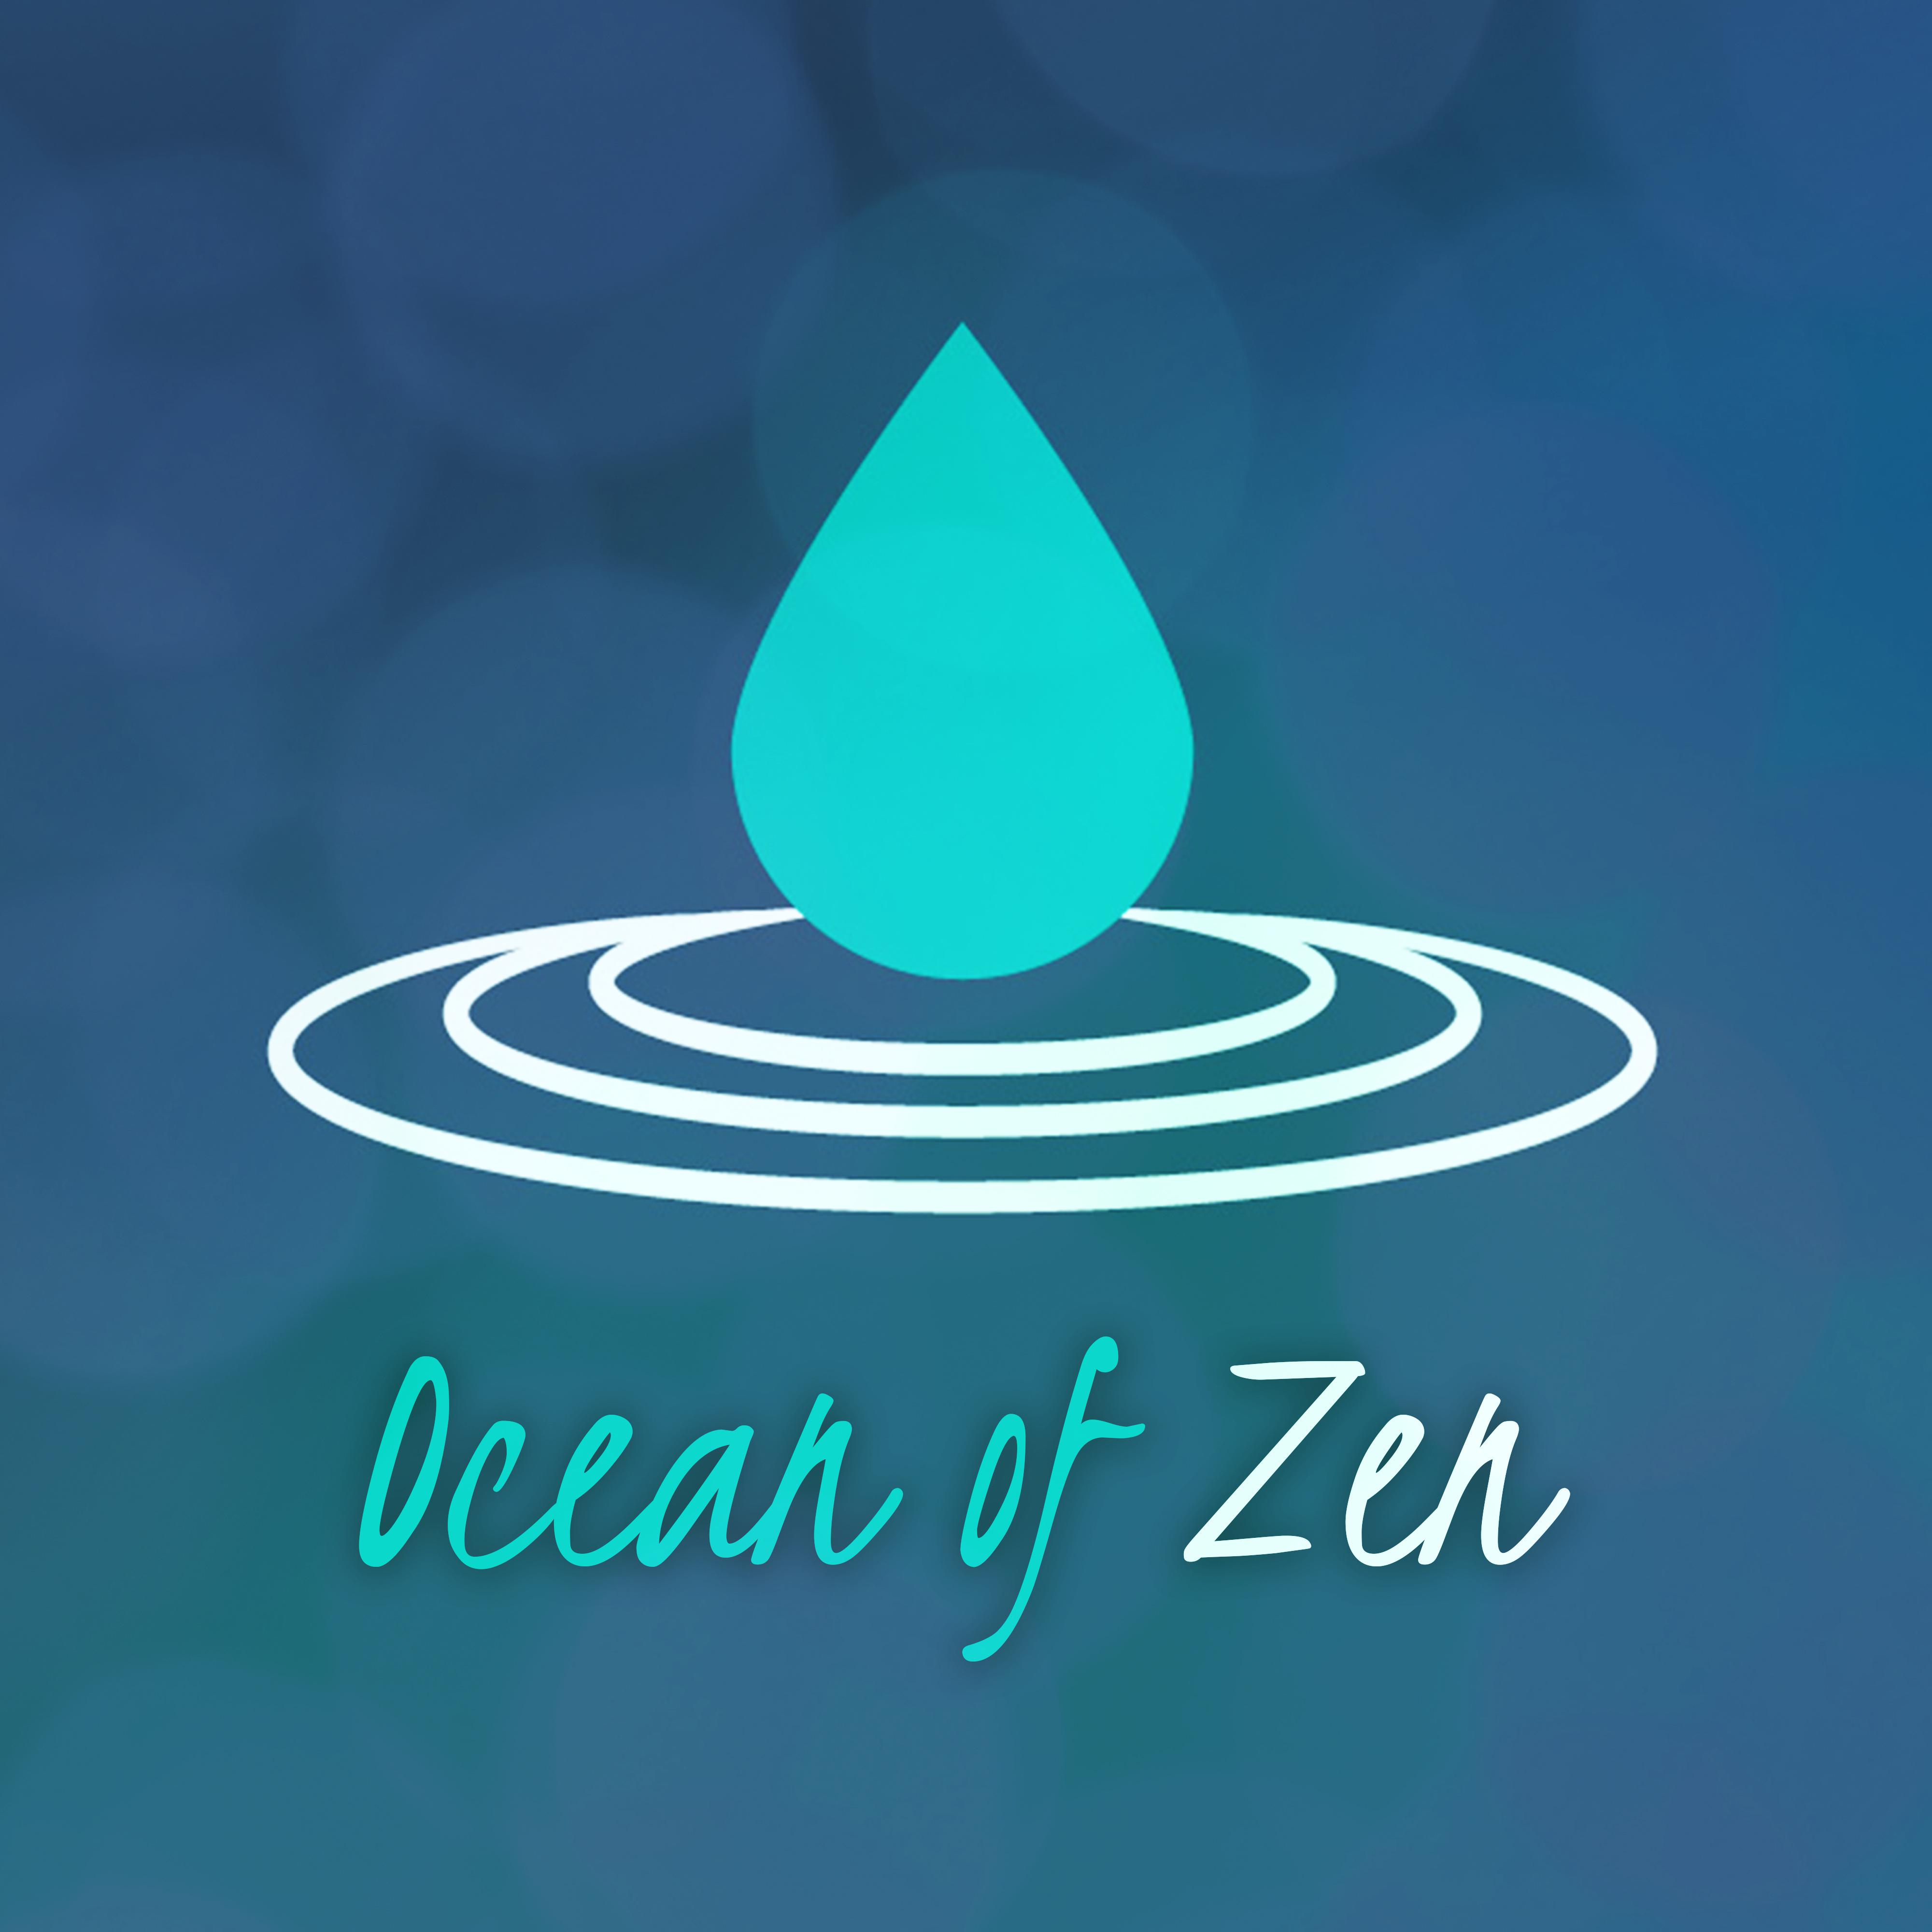 Ocean of Zen